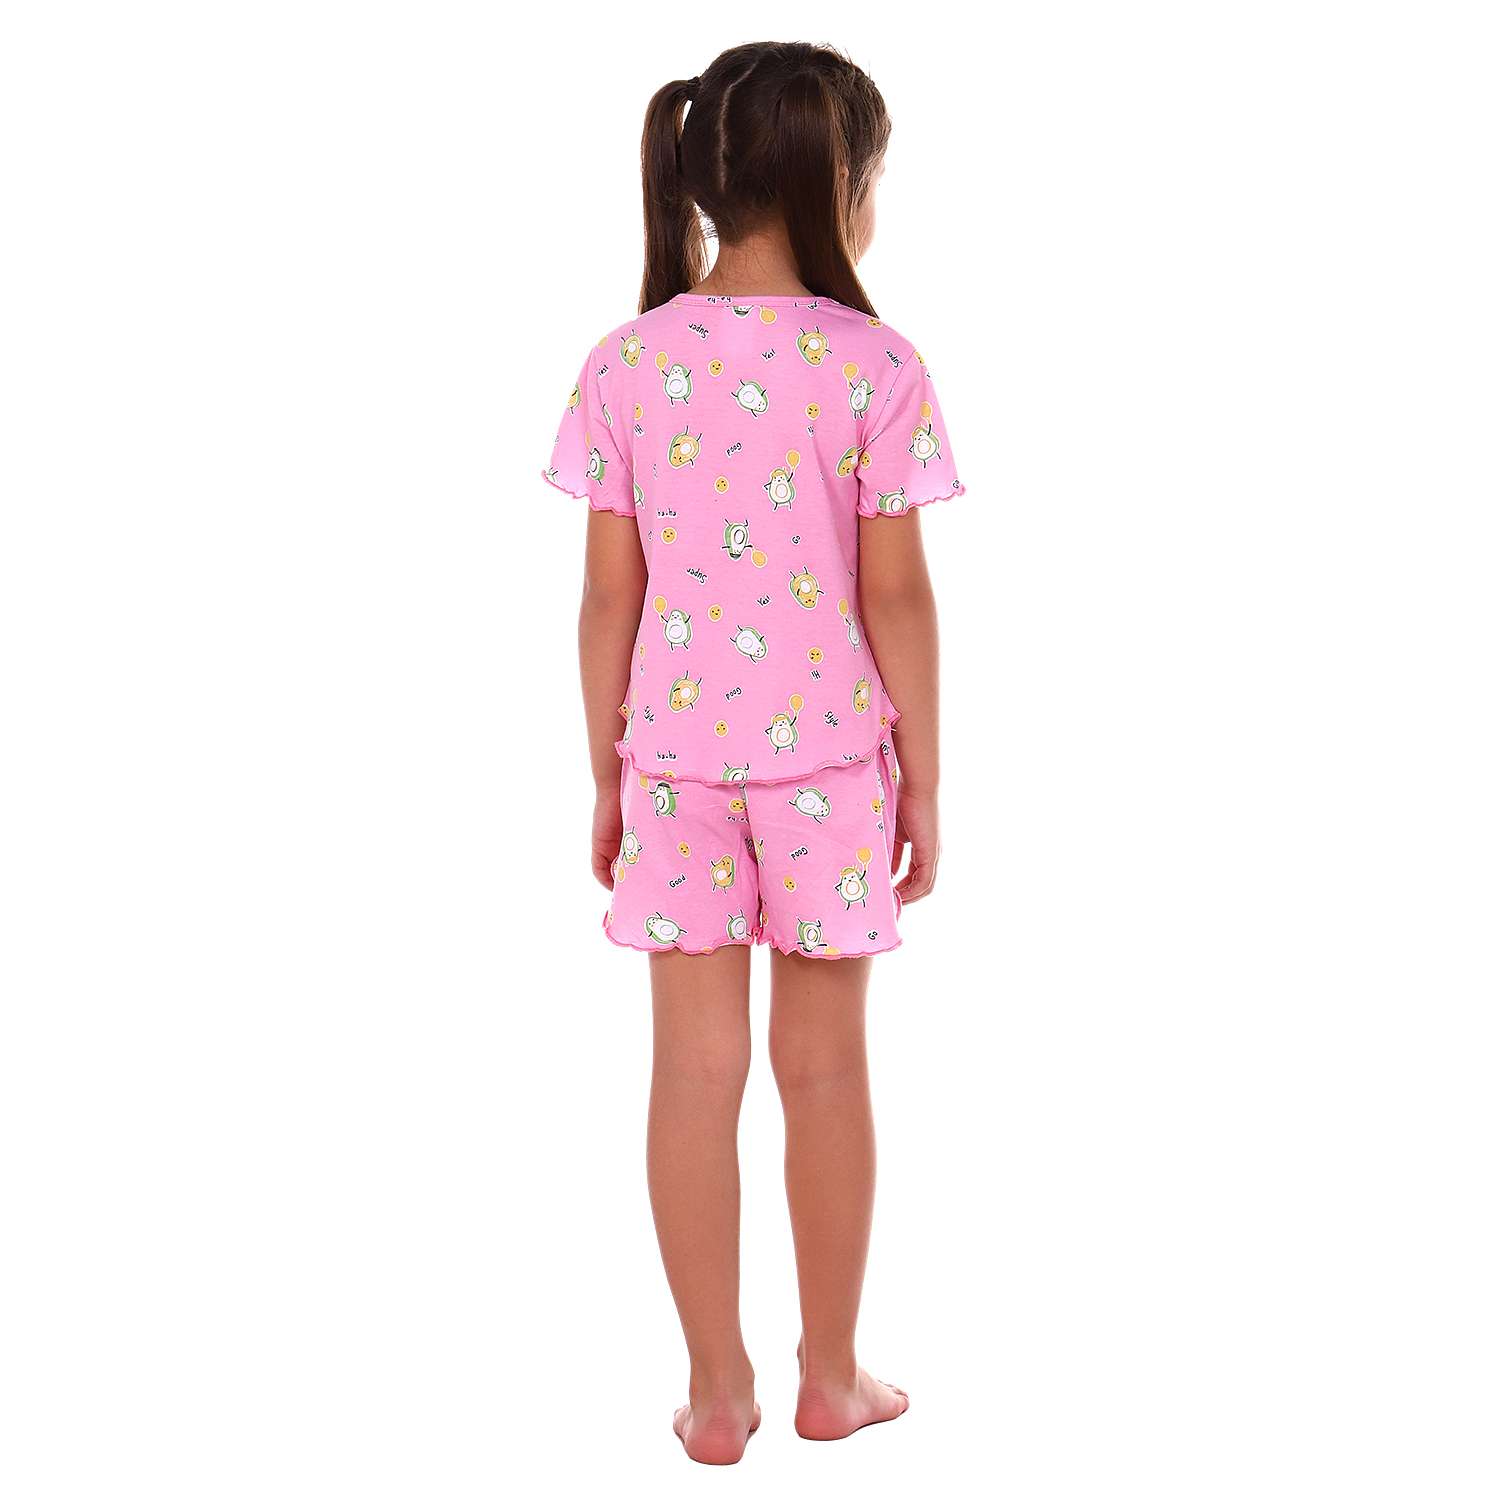 Пижама Детская Одежда 0410КД2/розовый3 - фото 3